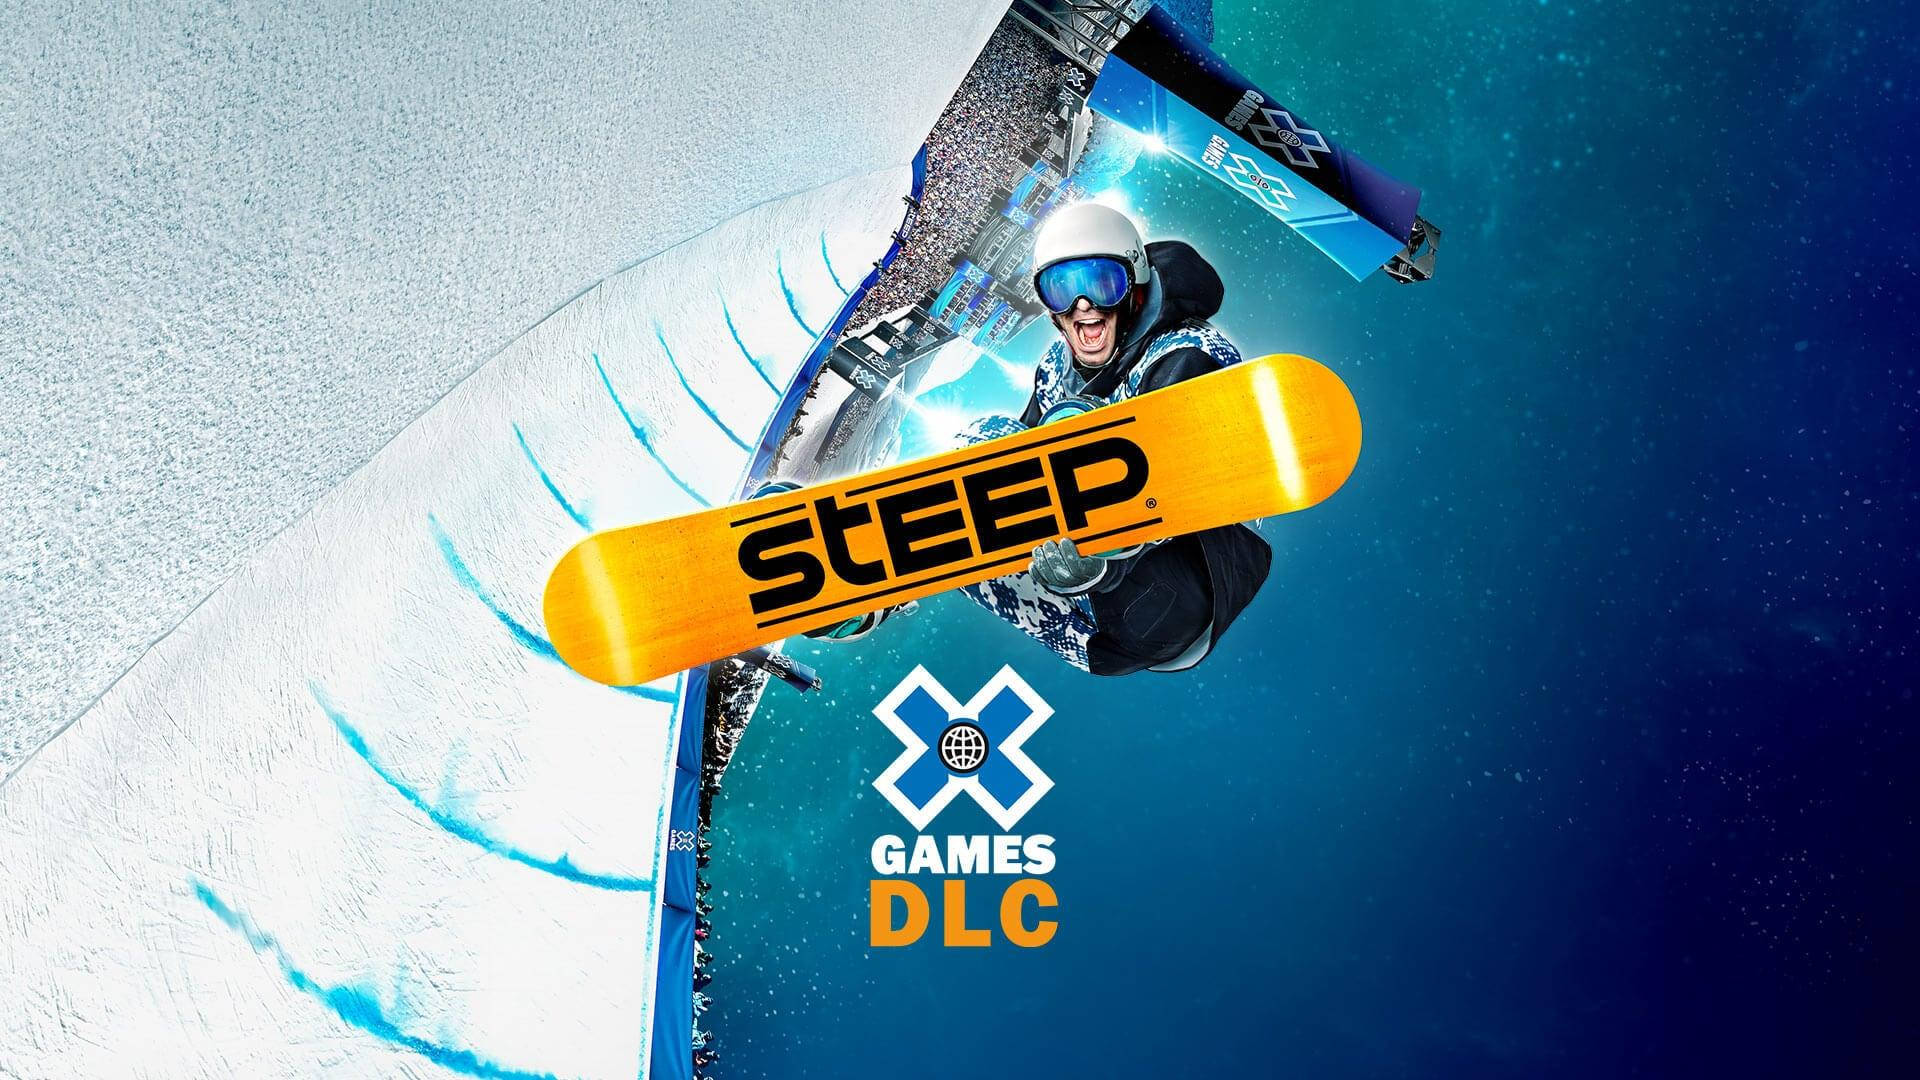 Steep X Games Dlc Cover